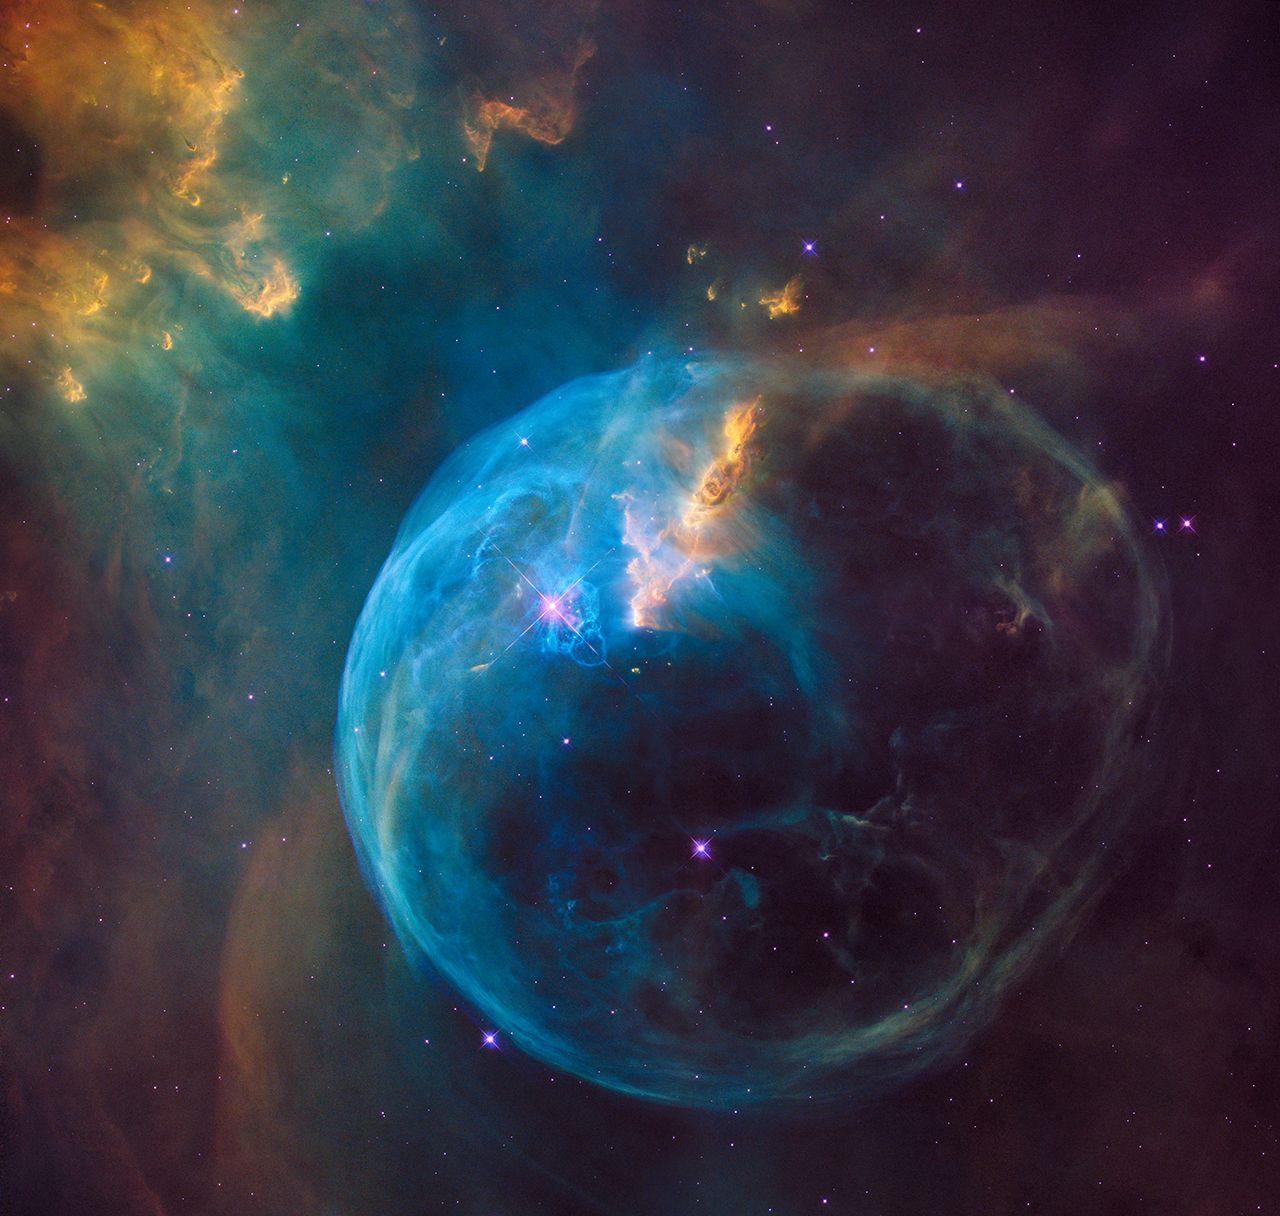 Zum 26. Geburtstag des Teleskops hat die NASA ein ganz besonderes Foto veröffentlicht. Es zeigt die so gennannte "Bubble Nebula". Diese ist 7 Lichtjahre breit und etwa 7.100 Lichtjahre von der Erde entfernt. Das Foto zeigt einen jungen Stern bei seiner Entstehung. Später soll er 45-mal größer werden, als unsere Sonne.